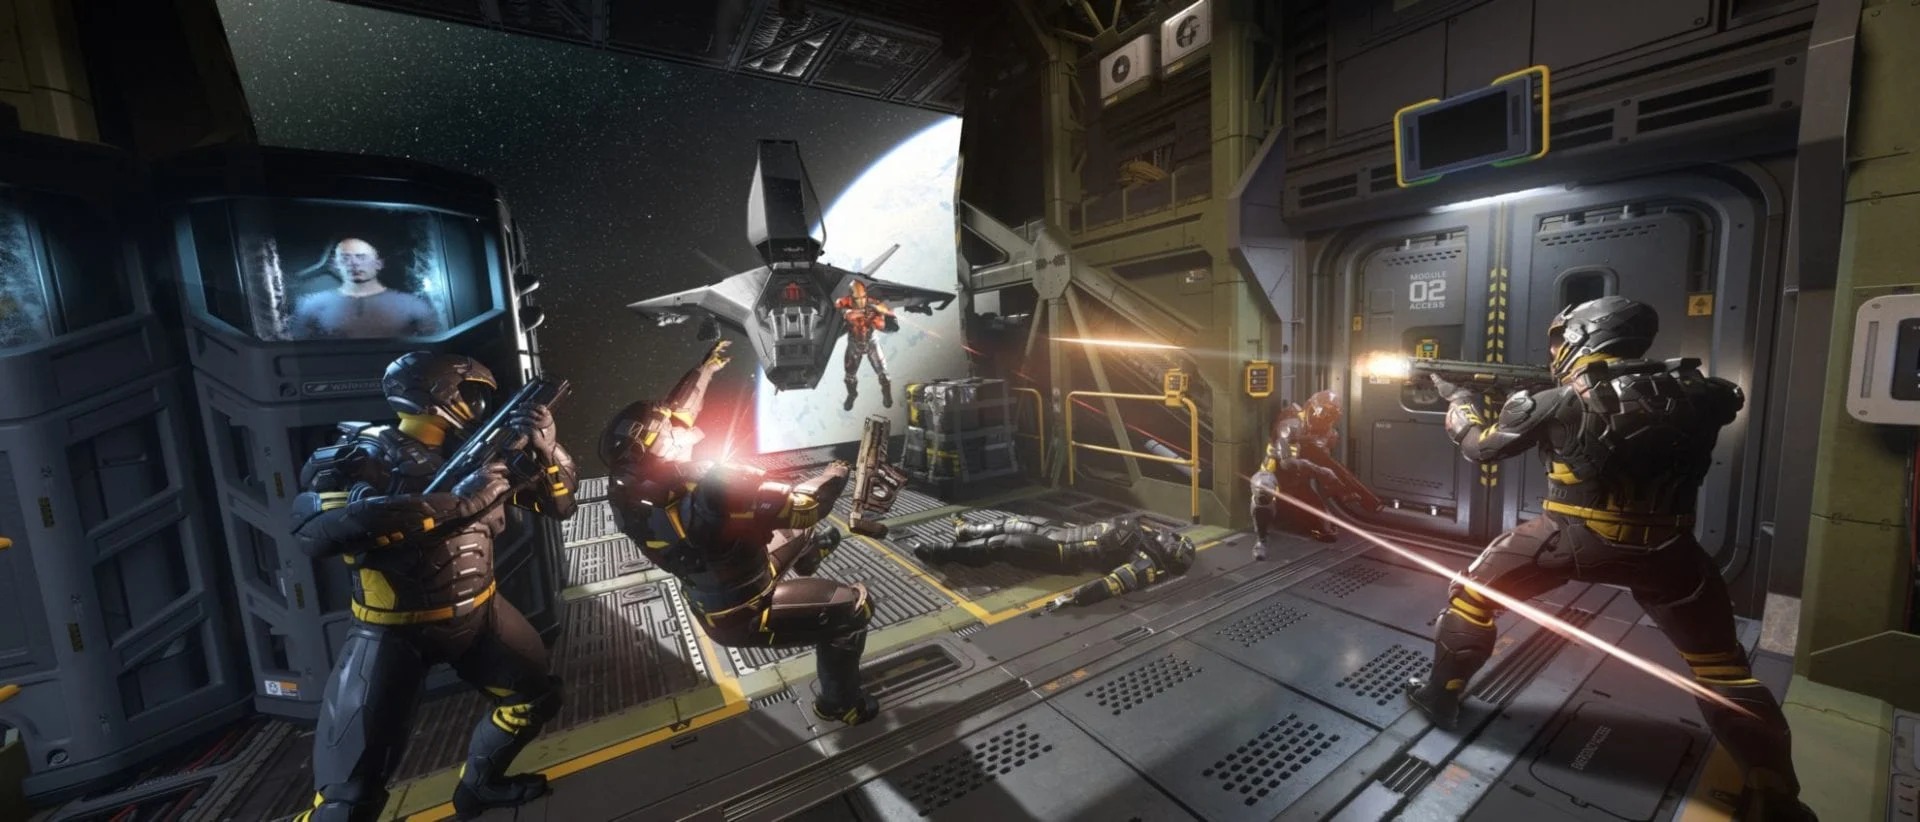 《星际公民》Alpha3.9版新预告及截图 游戏更好玩